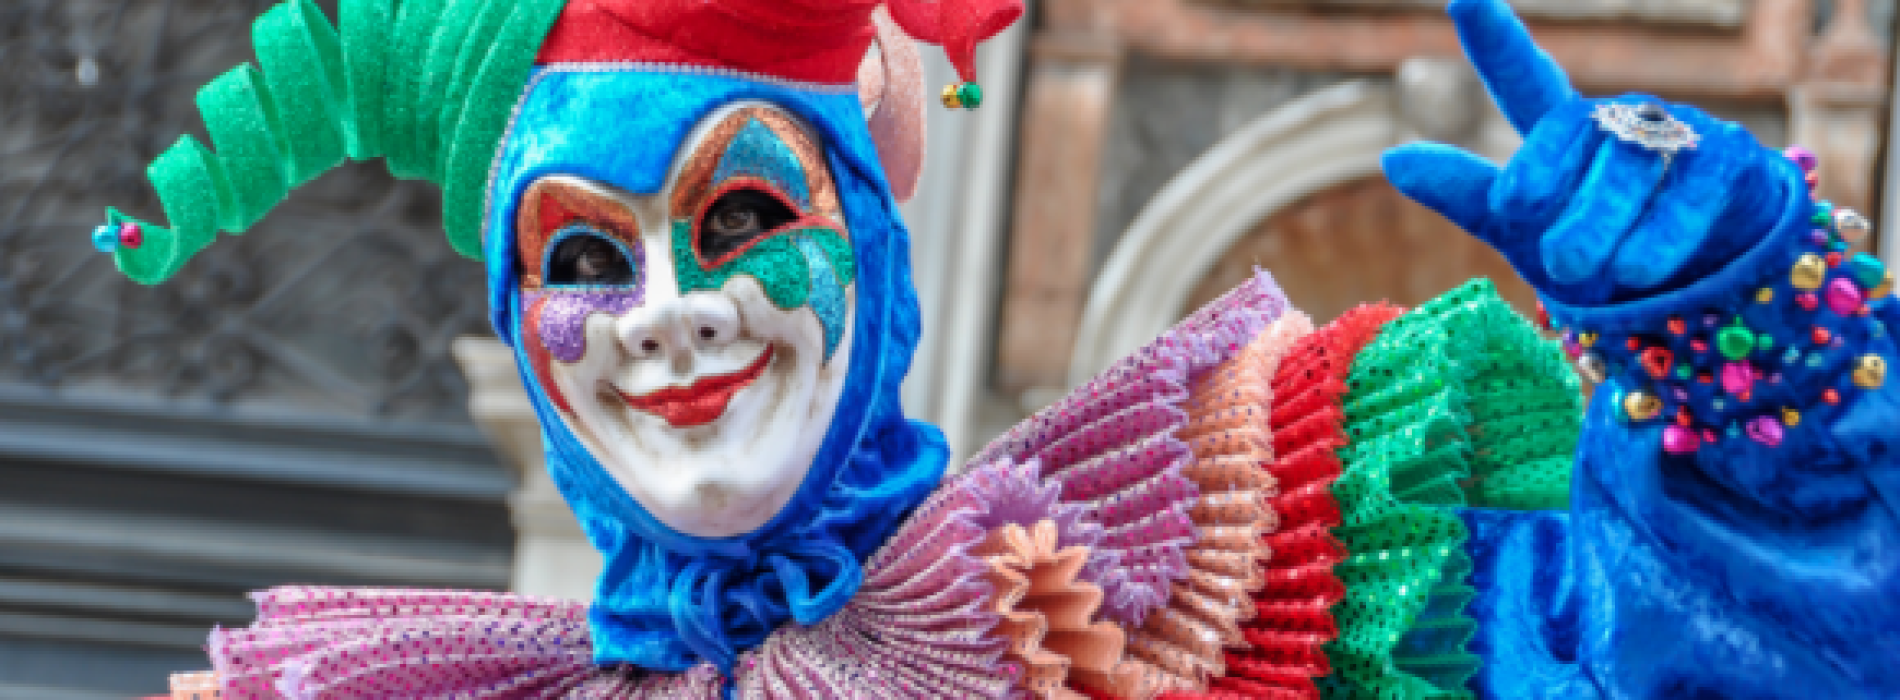 Il Carnevale in Terra di Lavoro, tra feste popolari e mascherate